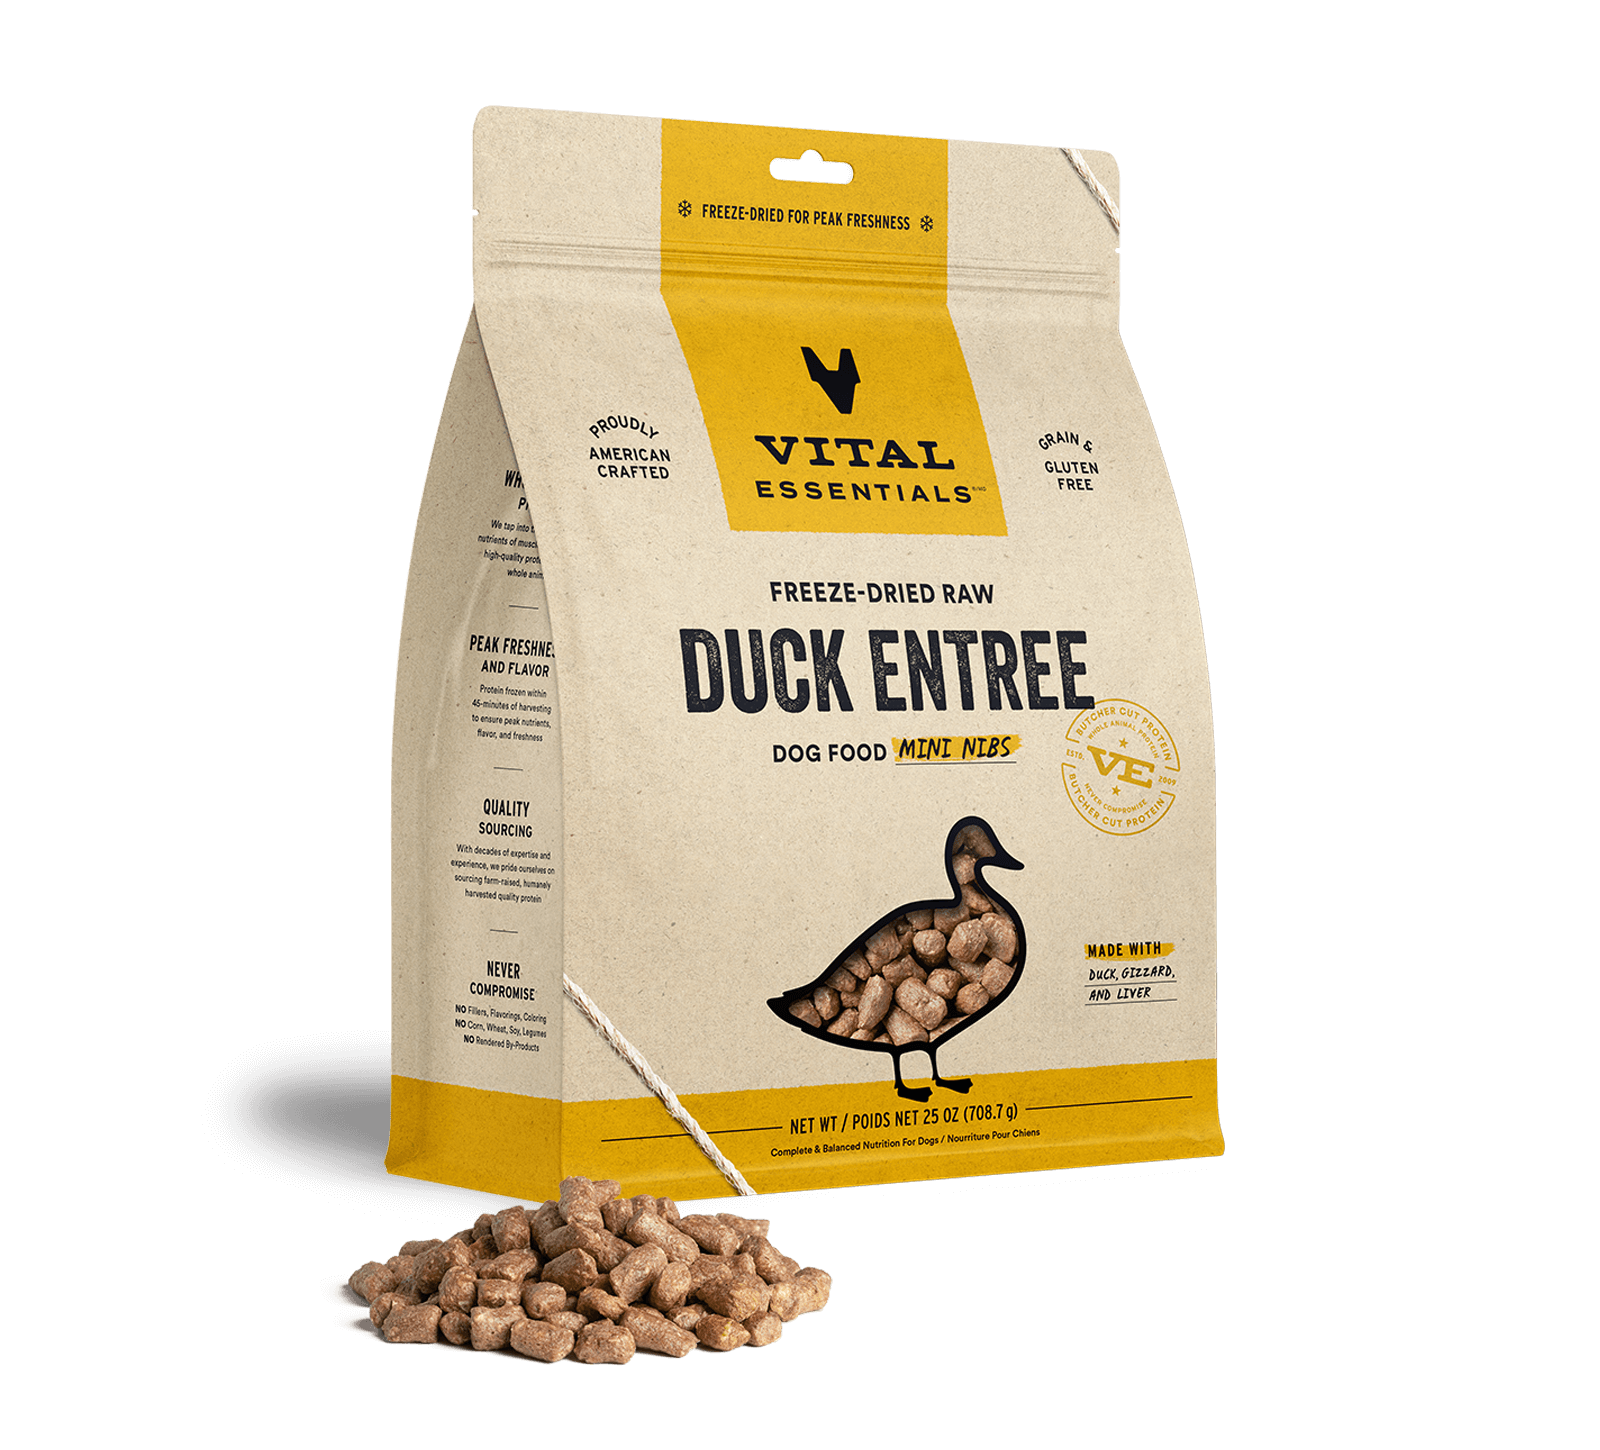 Vital Essentials Freeze-Dried Raw Duck Entree Dog Food Mini Nibs, 25 oz - Treats